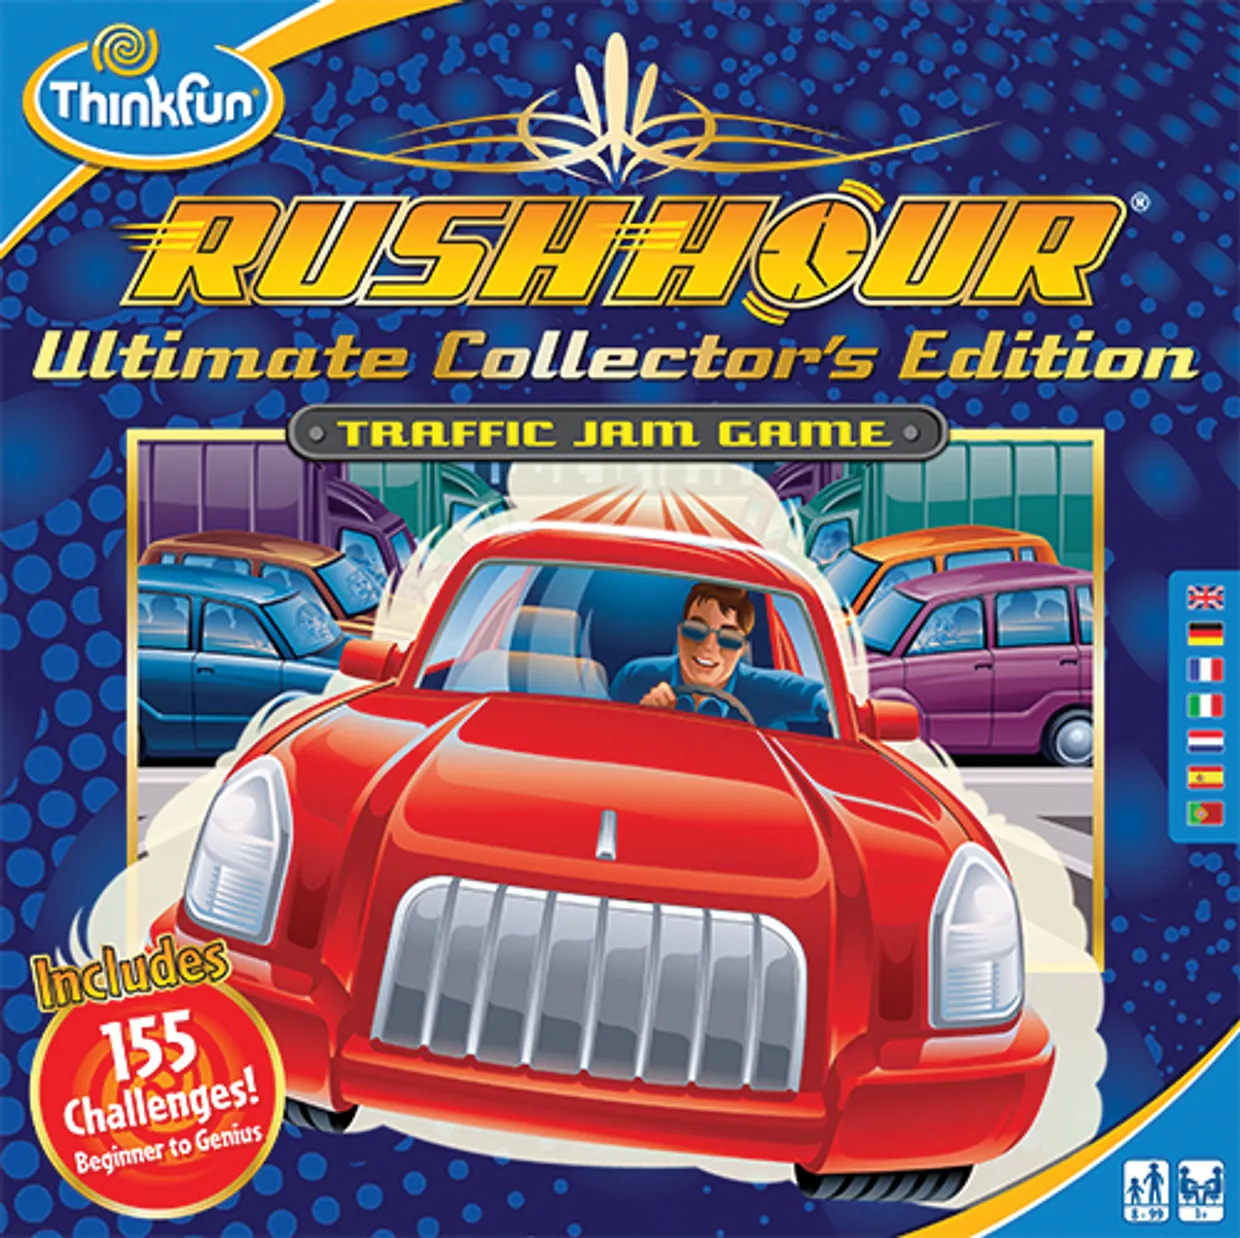 ThinkFun Rush Hour Ultimate